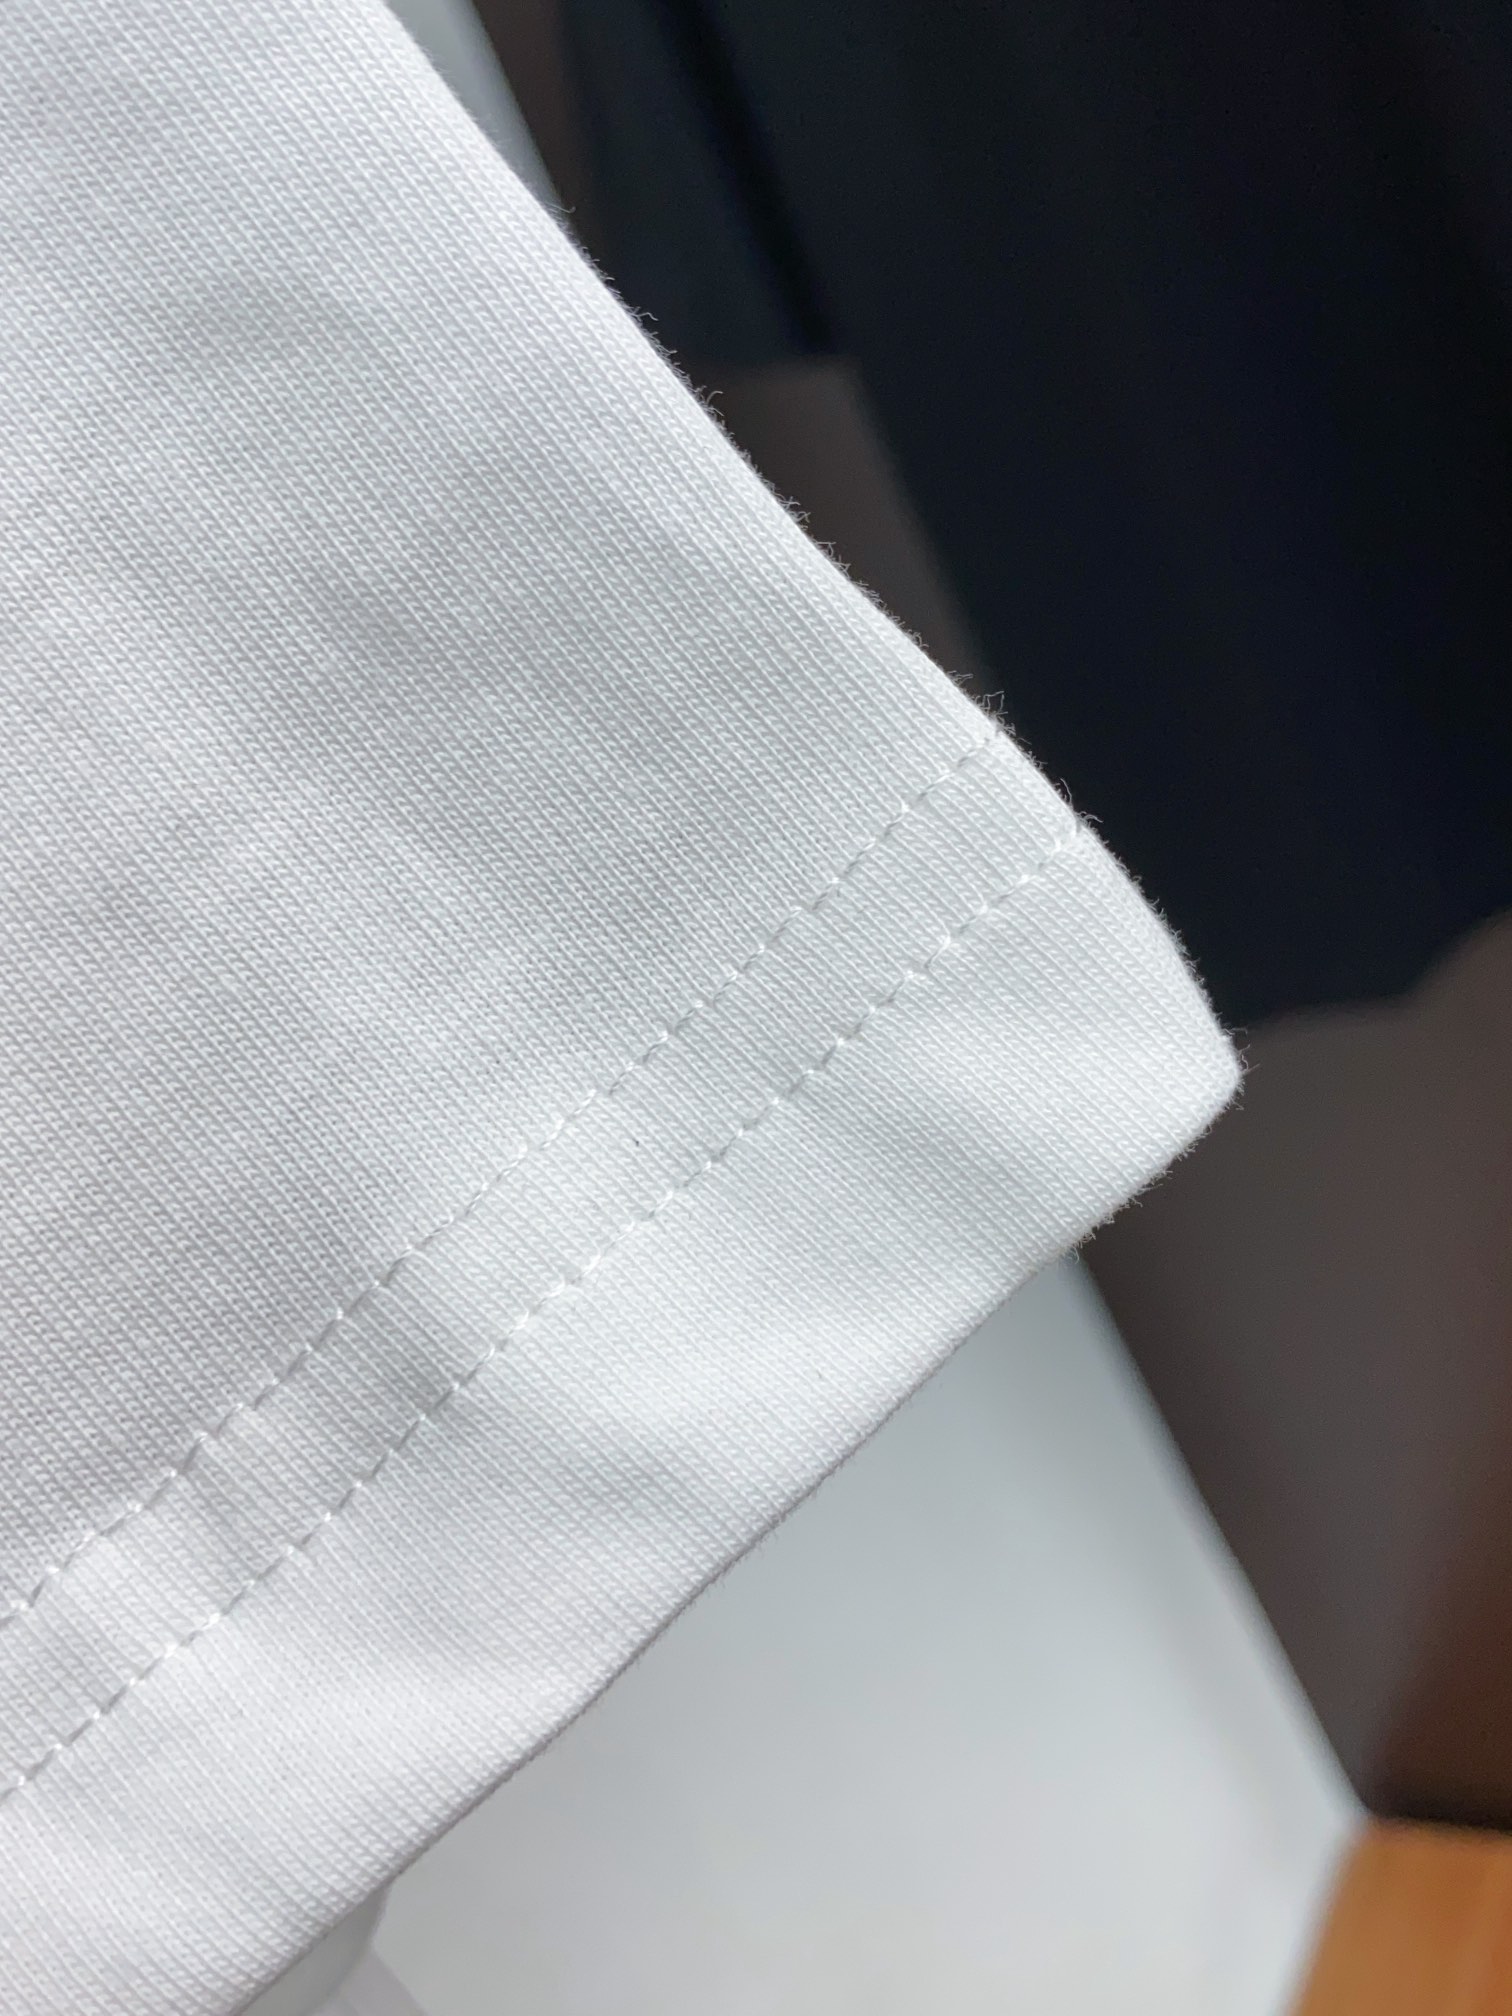 迪奥修身版型M-3xL24春夏早春新款短袖T恤顶级制作工艺进口纯棉面料手感细腻每个字母饱满立体清晰,一眼